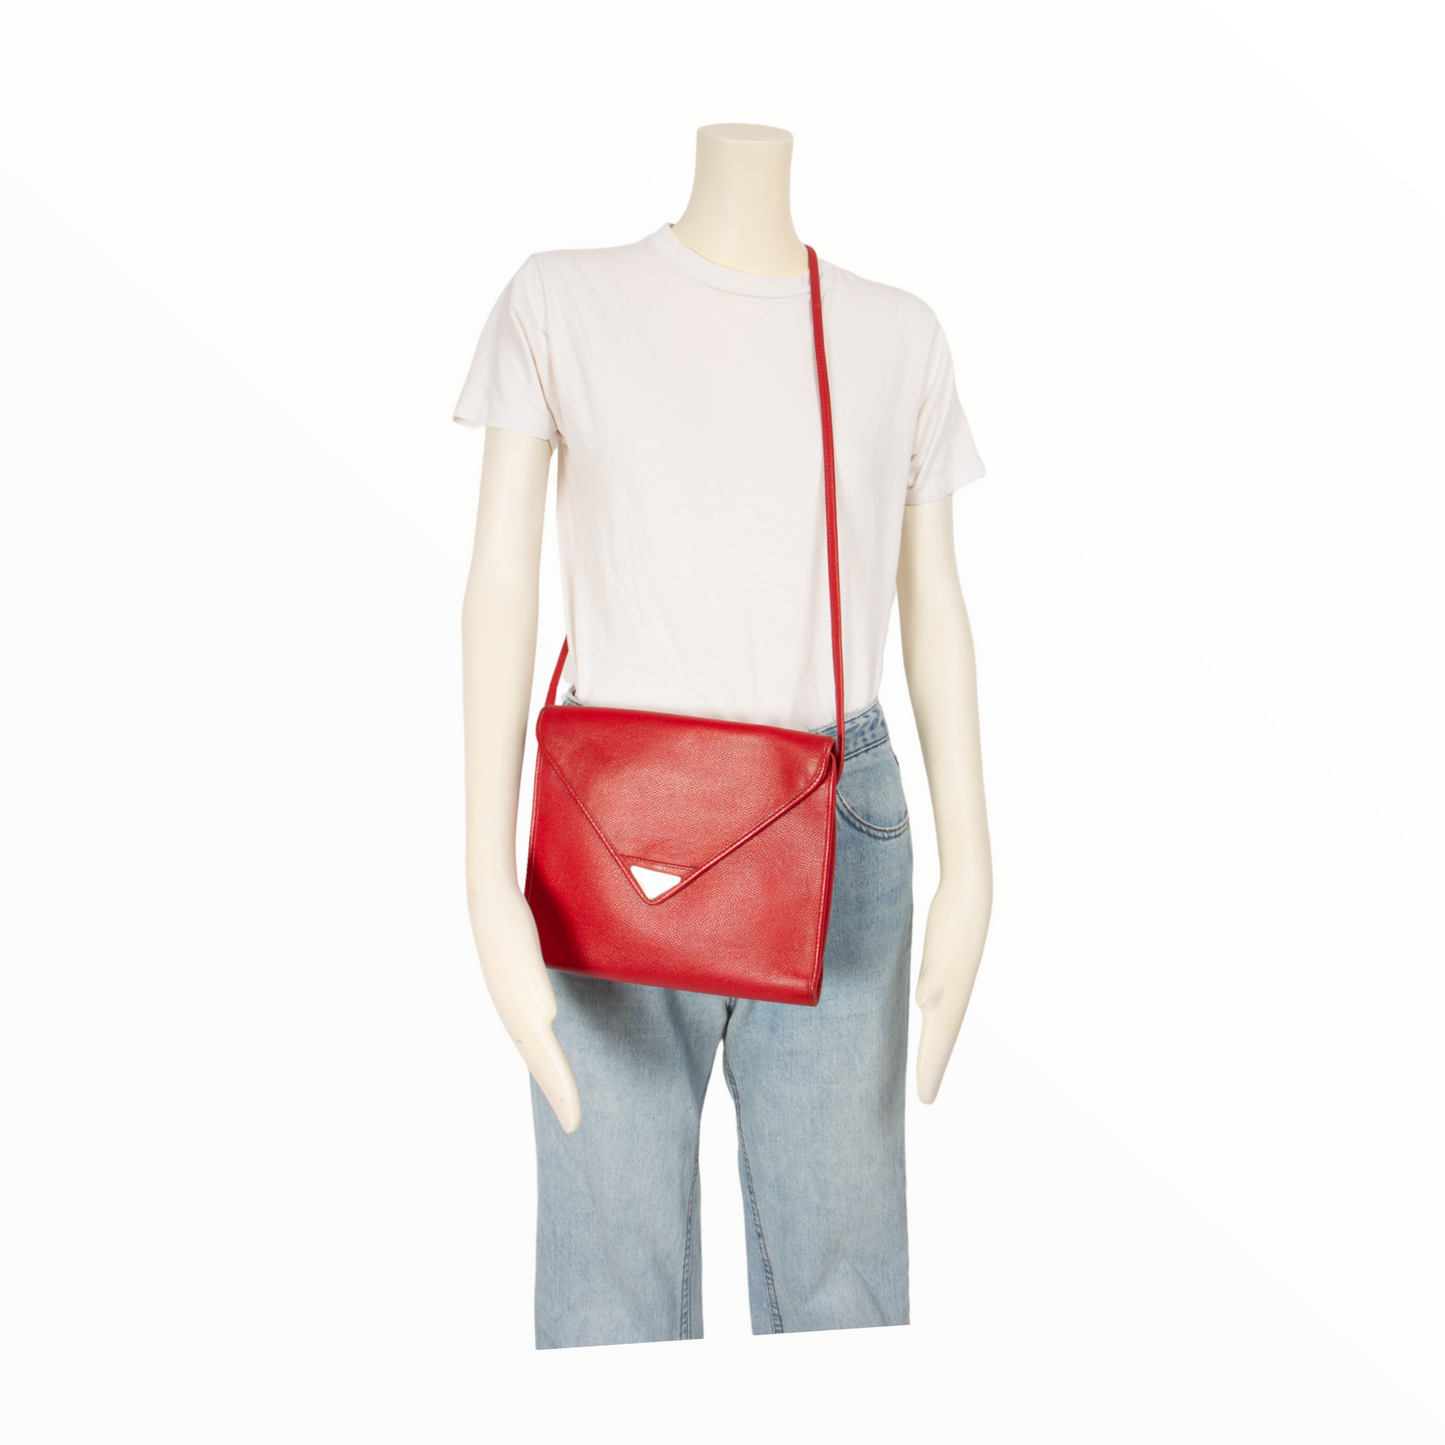 SAINT LAURENT Shoulder bags vintage Lysis Paris pre-owned secondhand